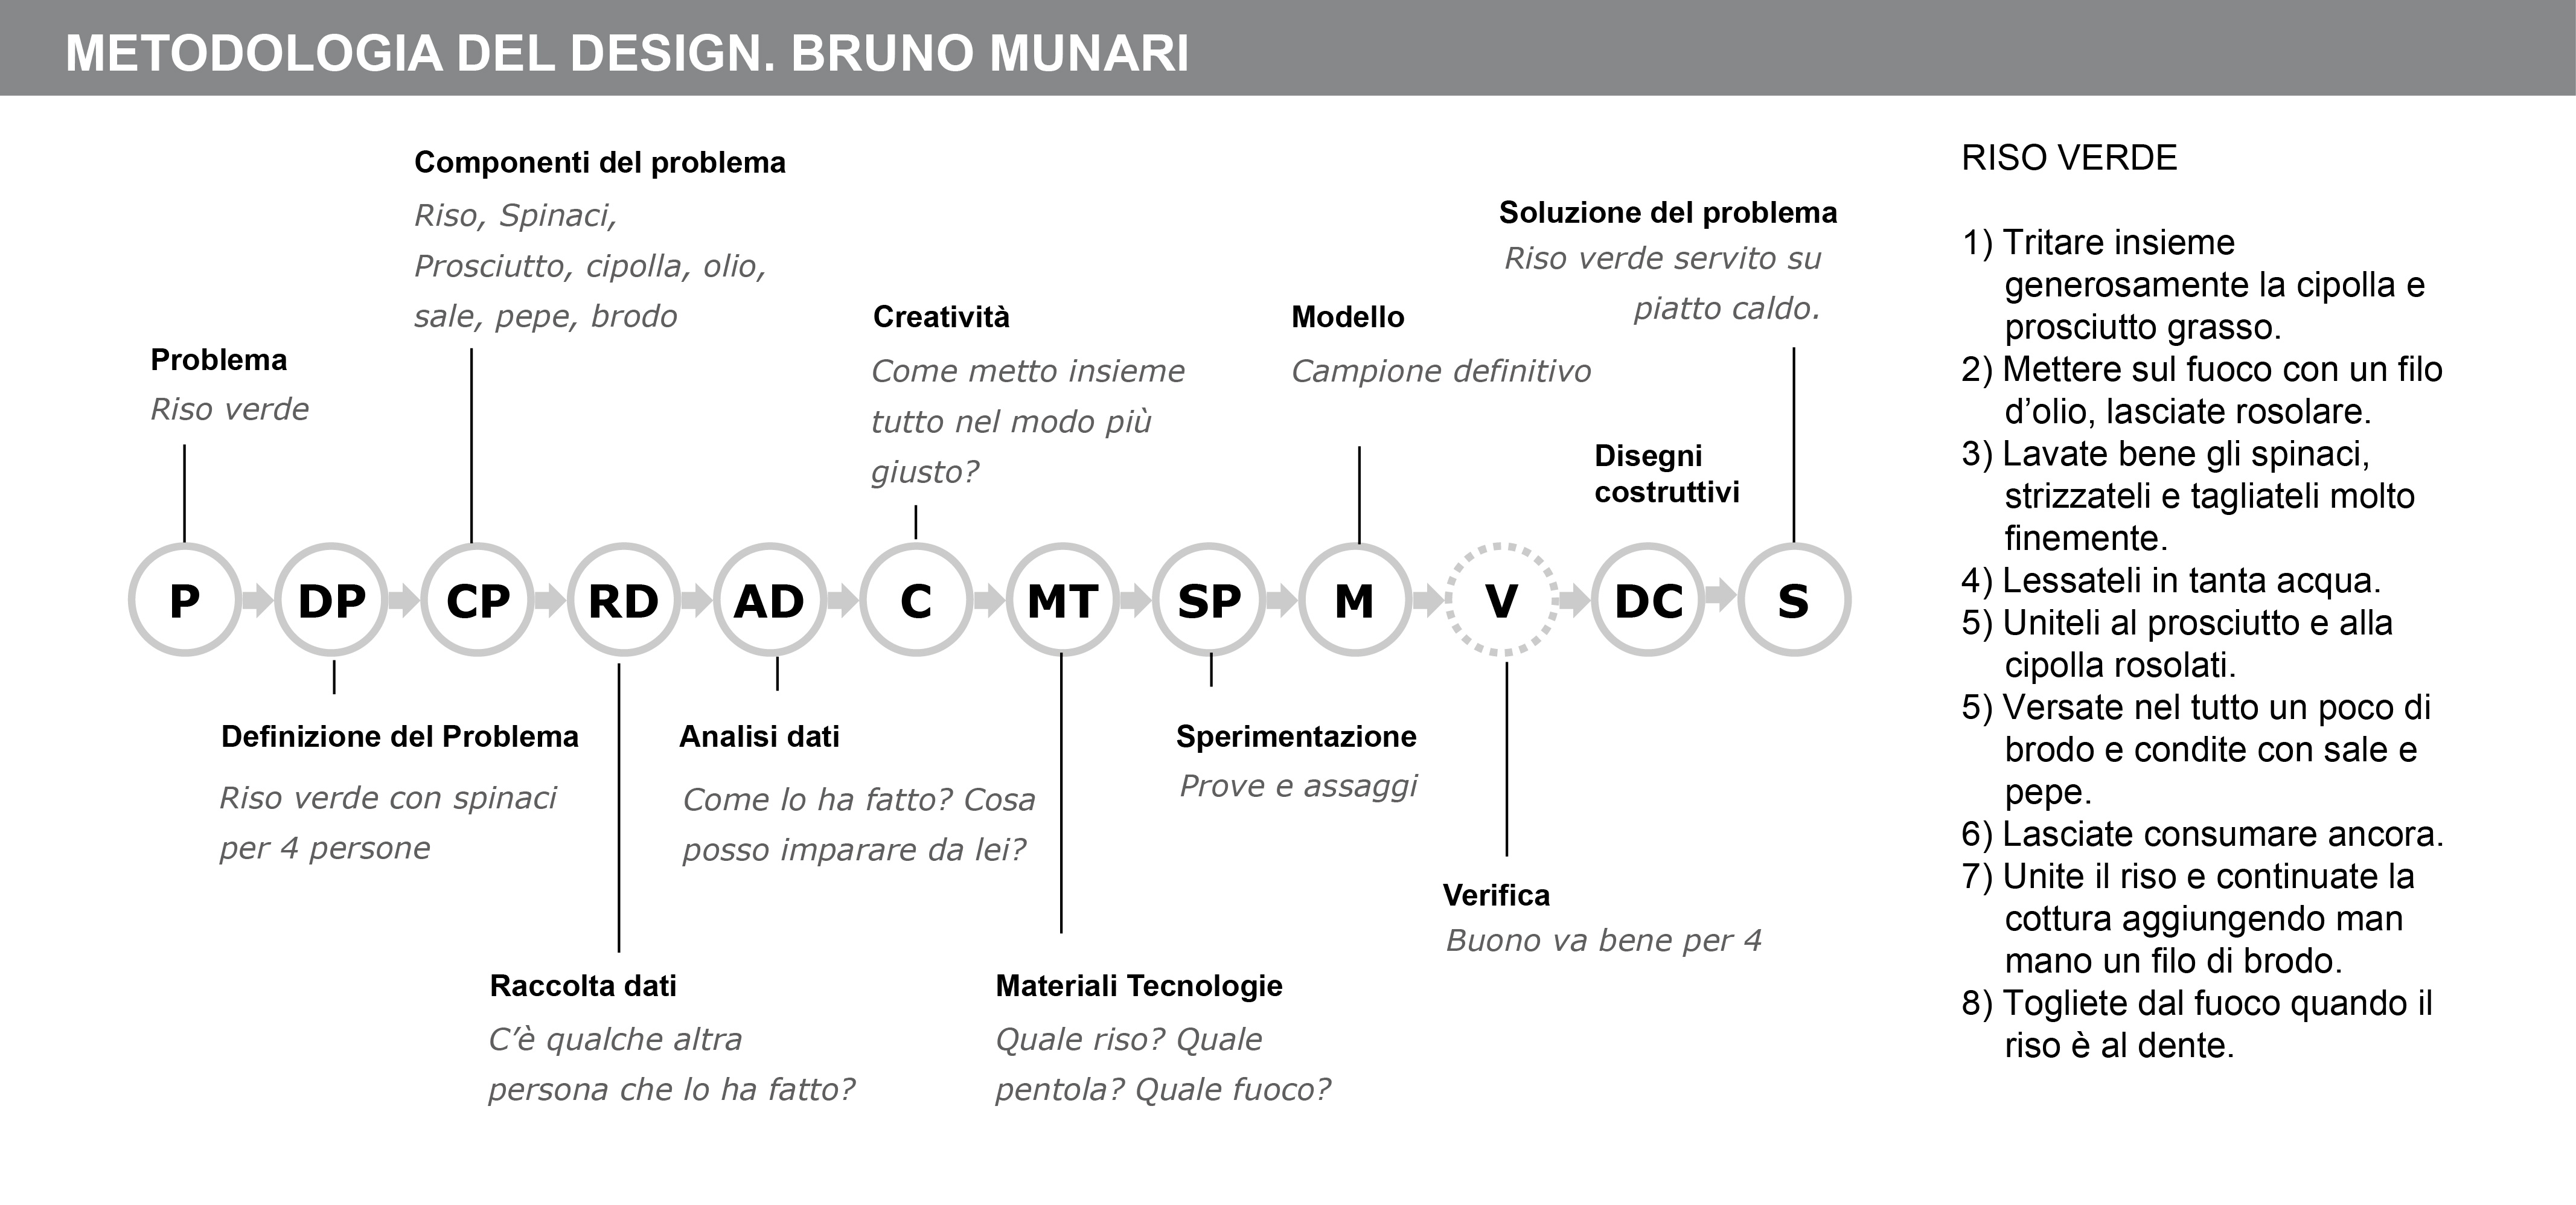 La metodologia progettuale di Bruno Munari – DUe design process